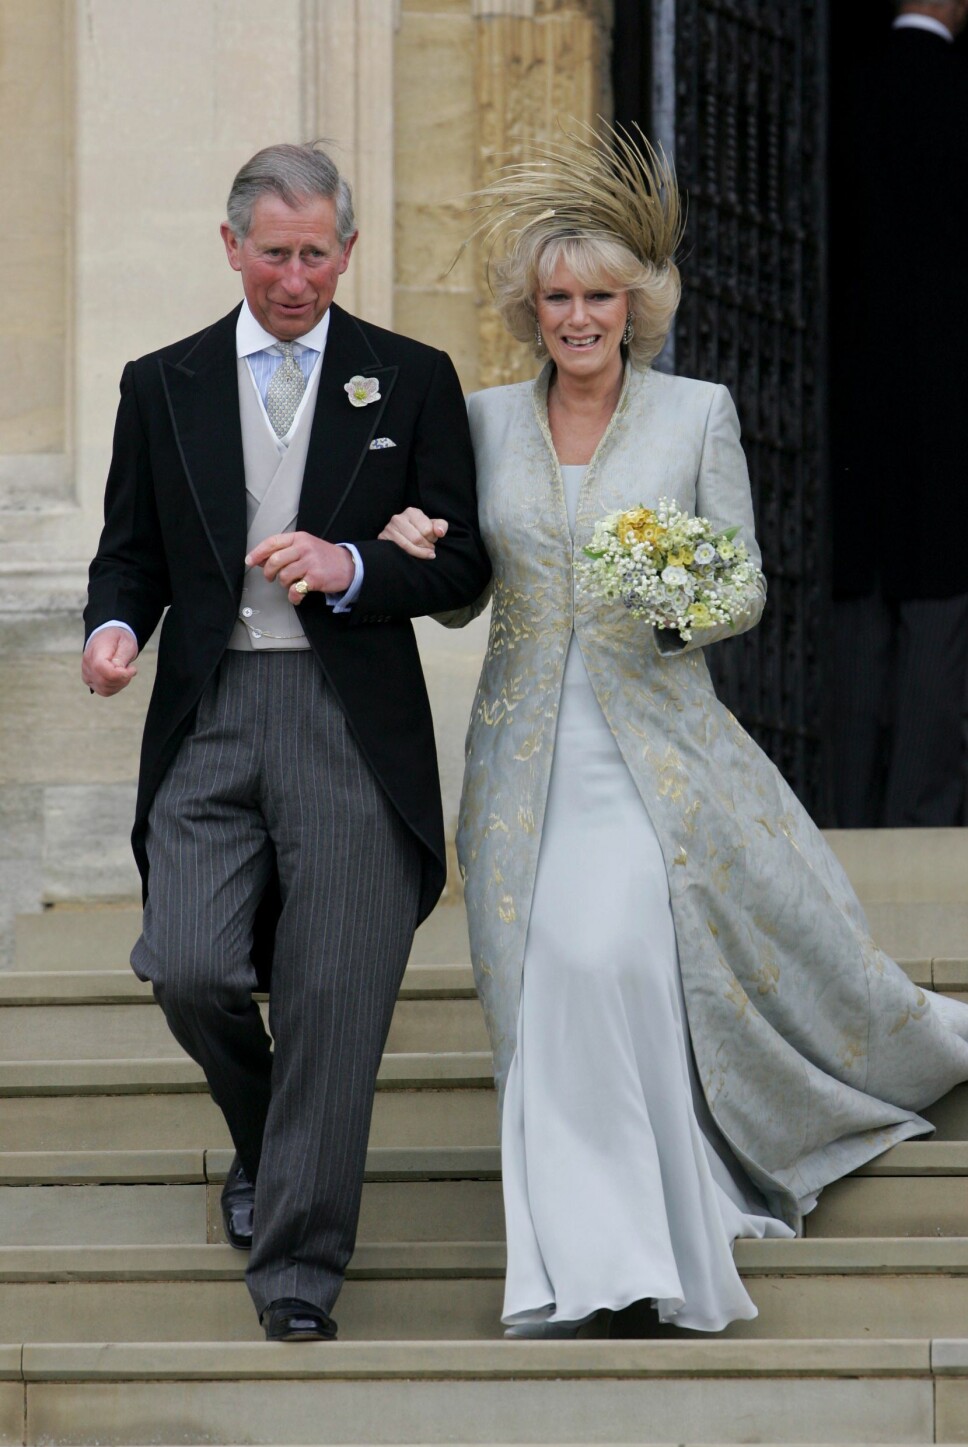 DEN RETTE: Prins Charles og Camilla har kjent hverandre i mange år, og var til og med ungdoms-
kjærester. Til tross for ekteskap på hver sin kant, har de aldri glemt hverandre og i 2005 giftet de seg.